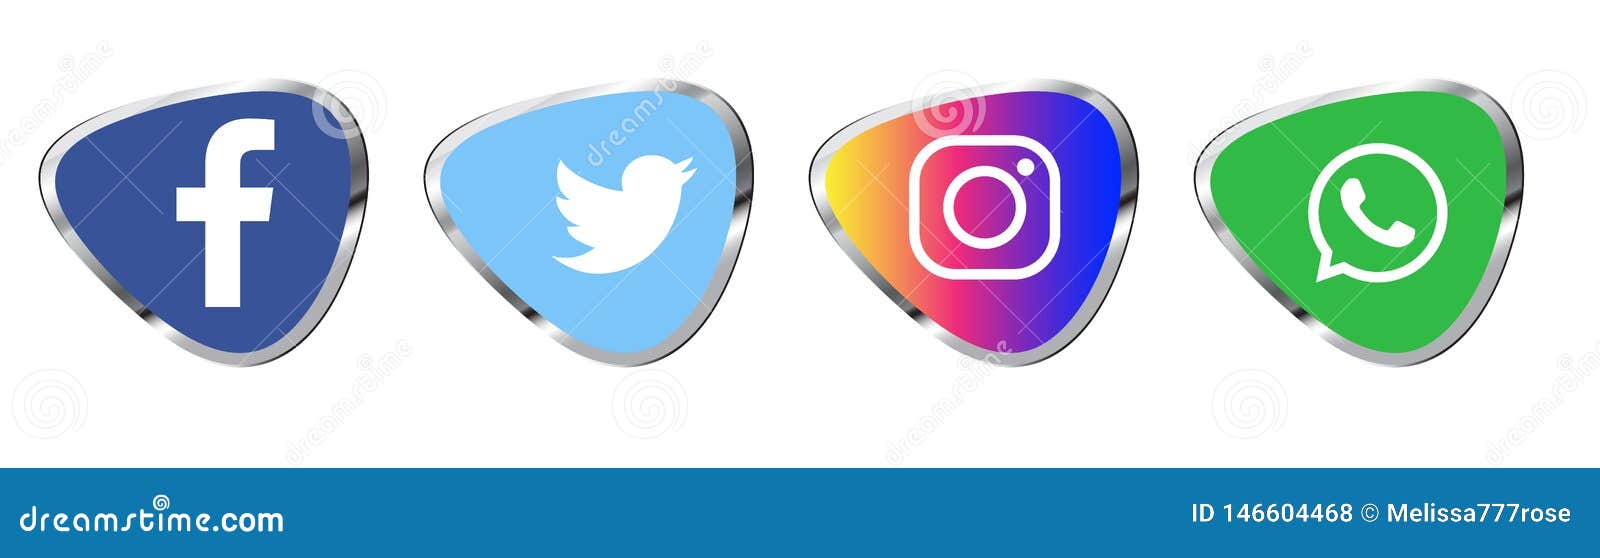 Set Of Popular Social Media Logos